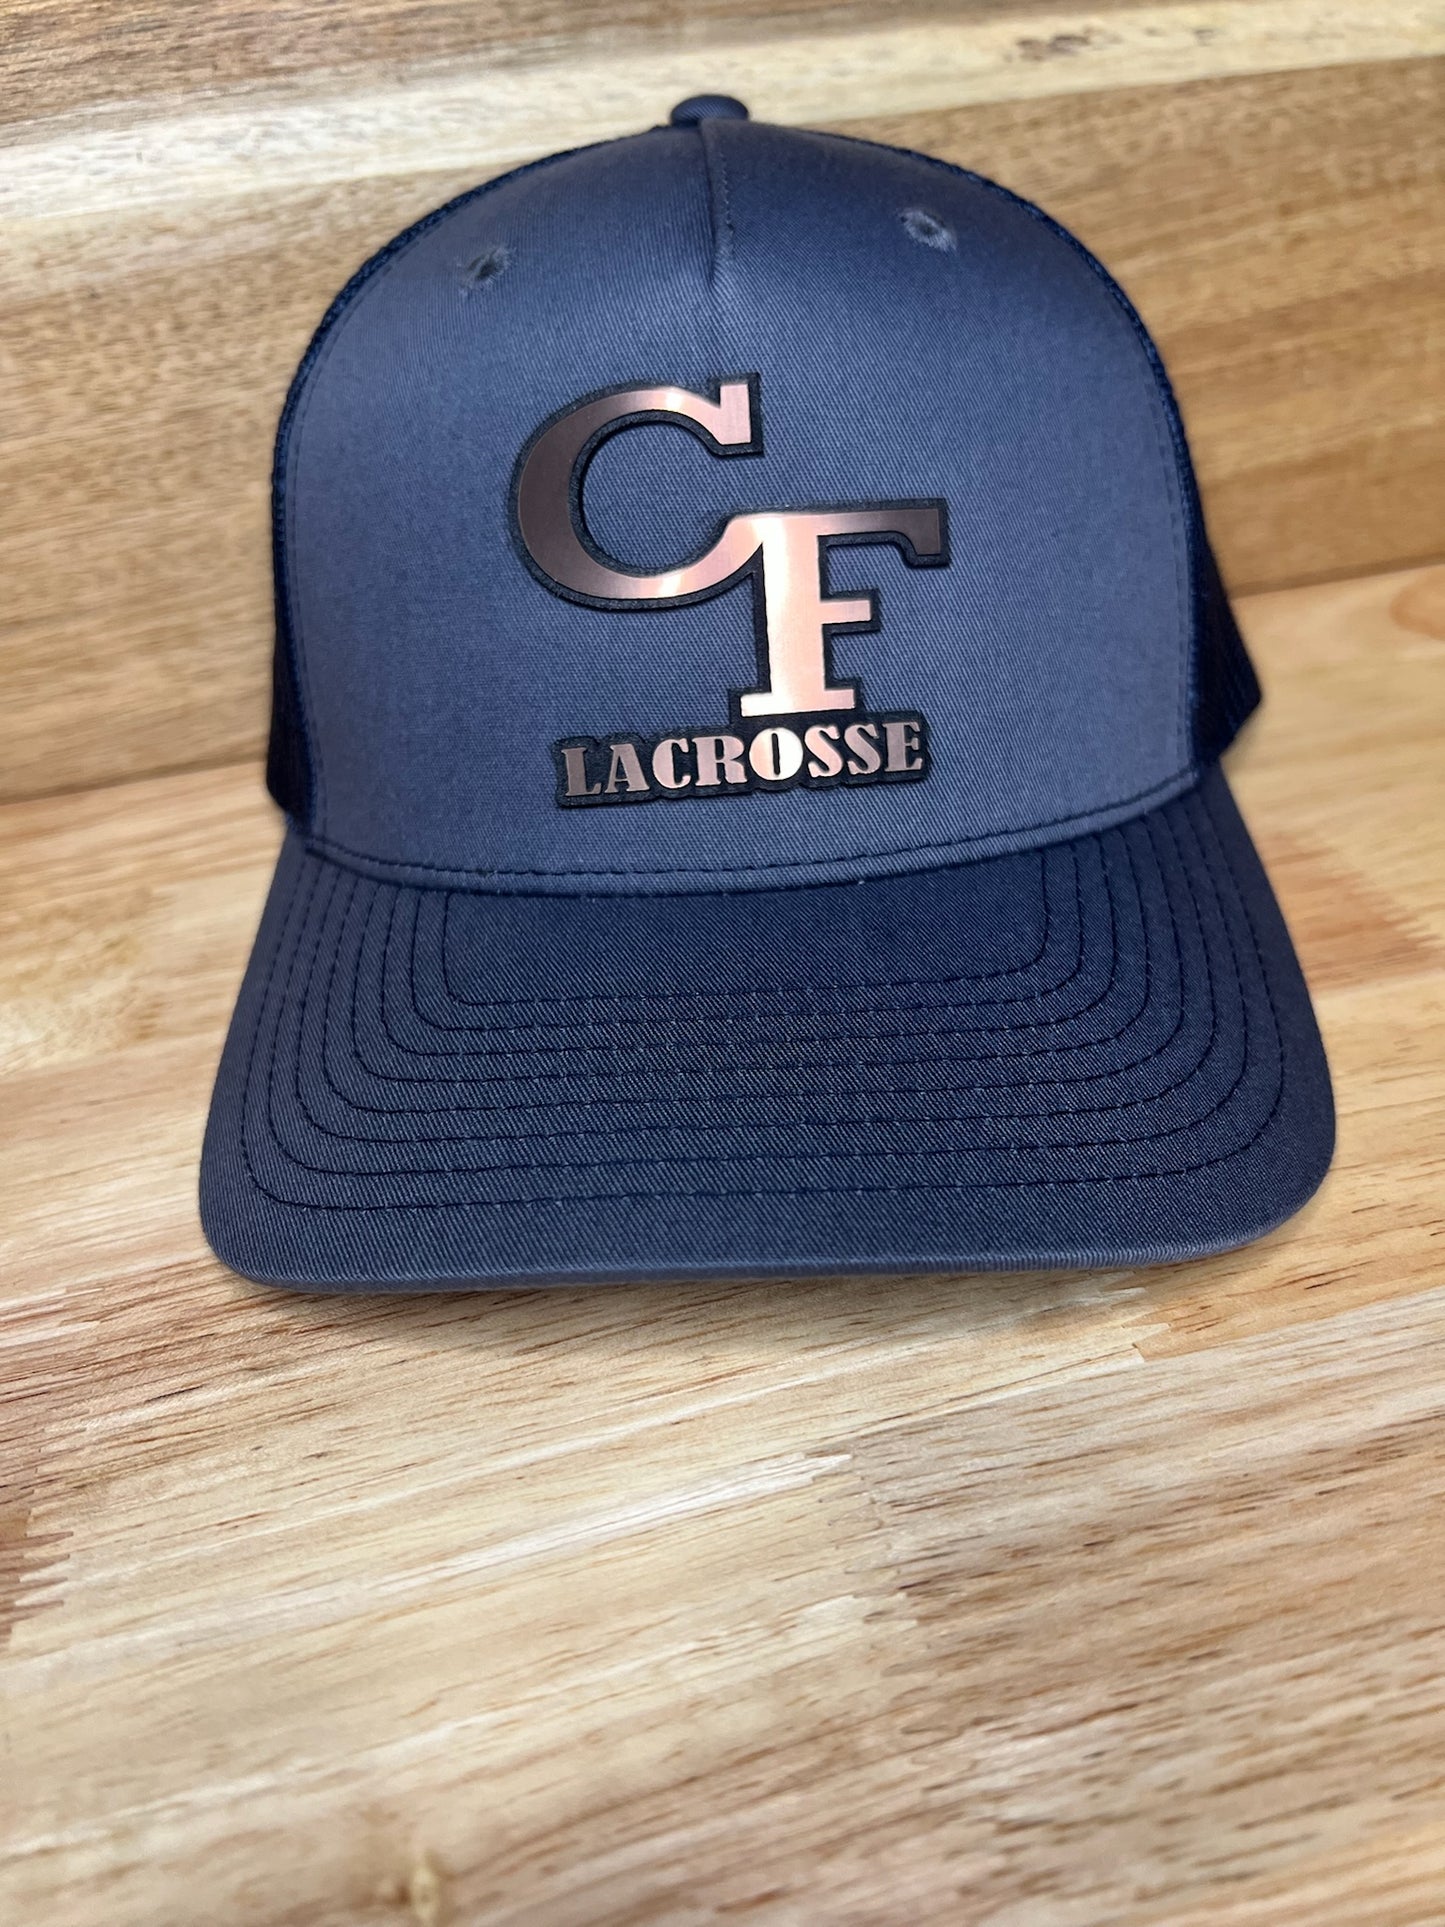 Cape Fear Lacrosse Patch Hat